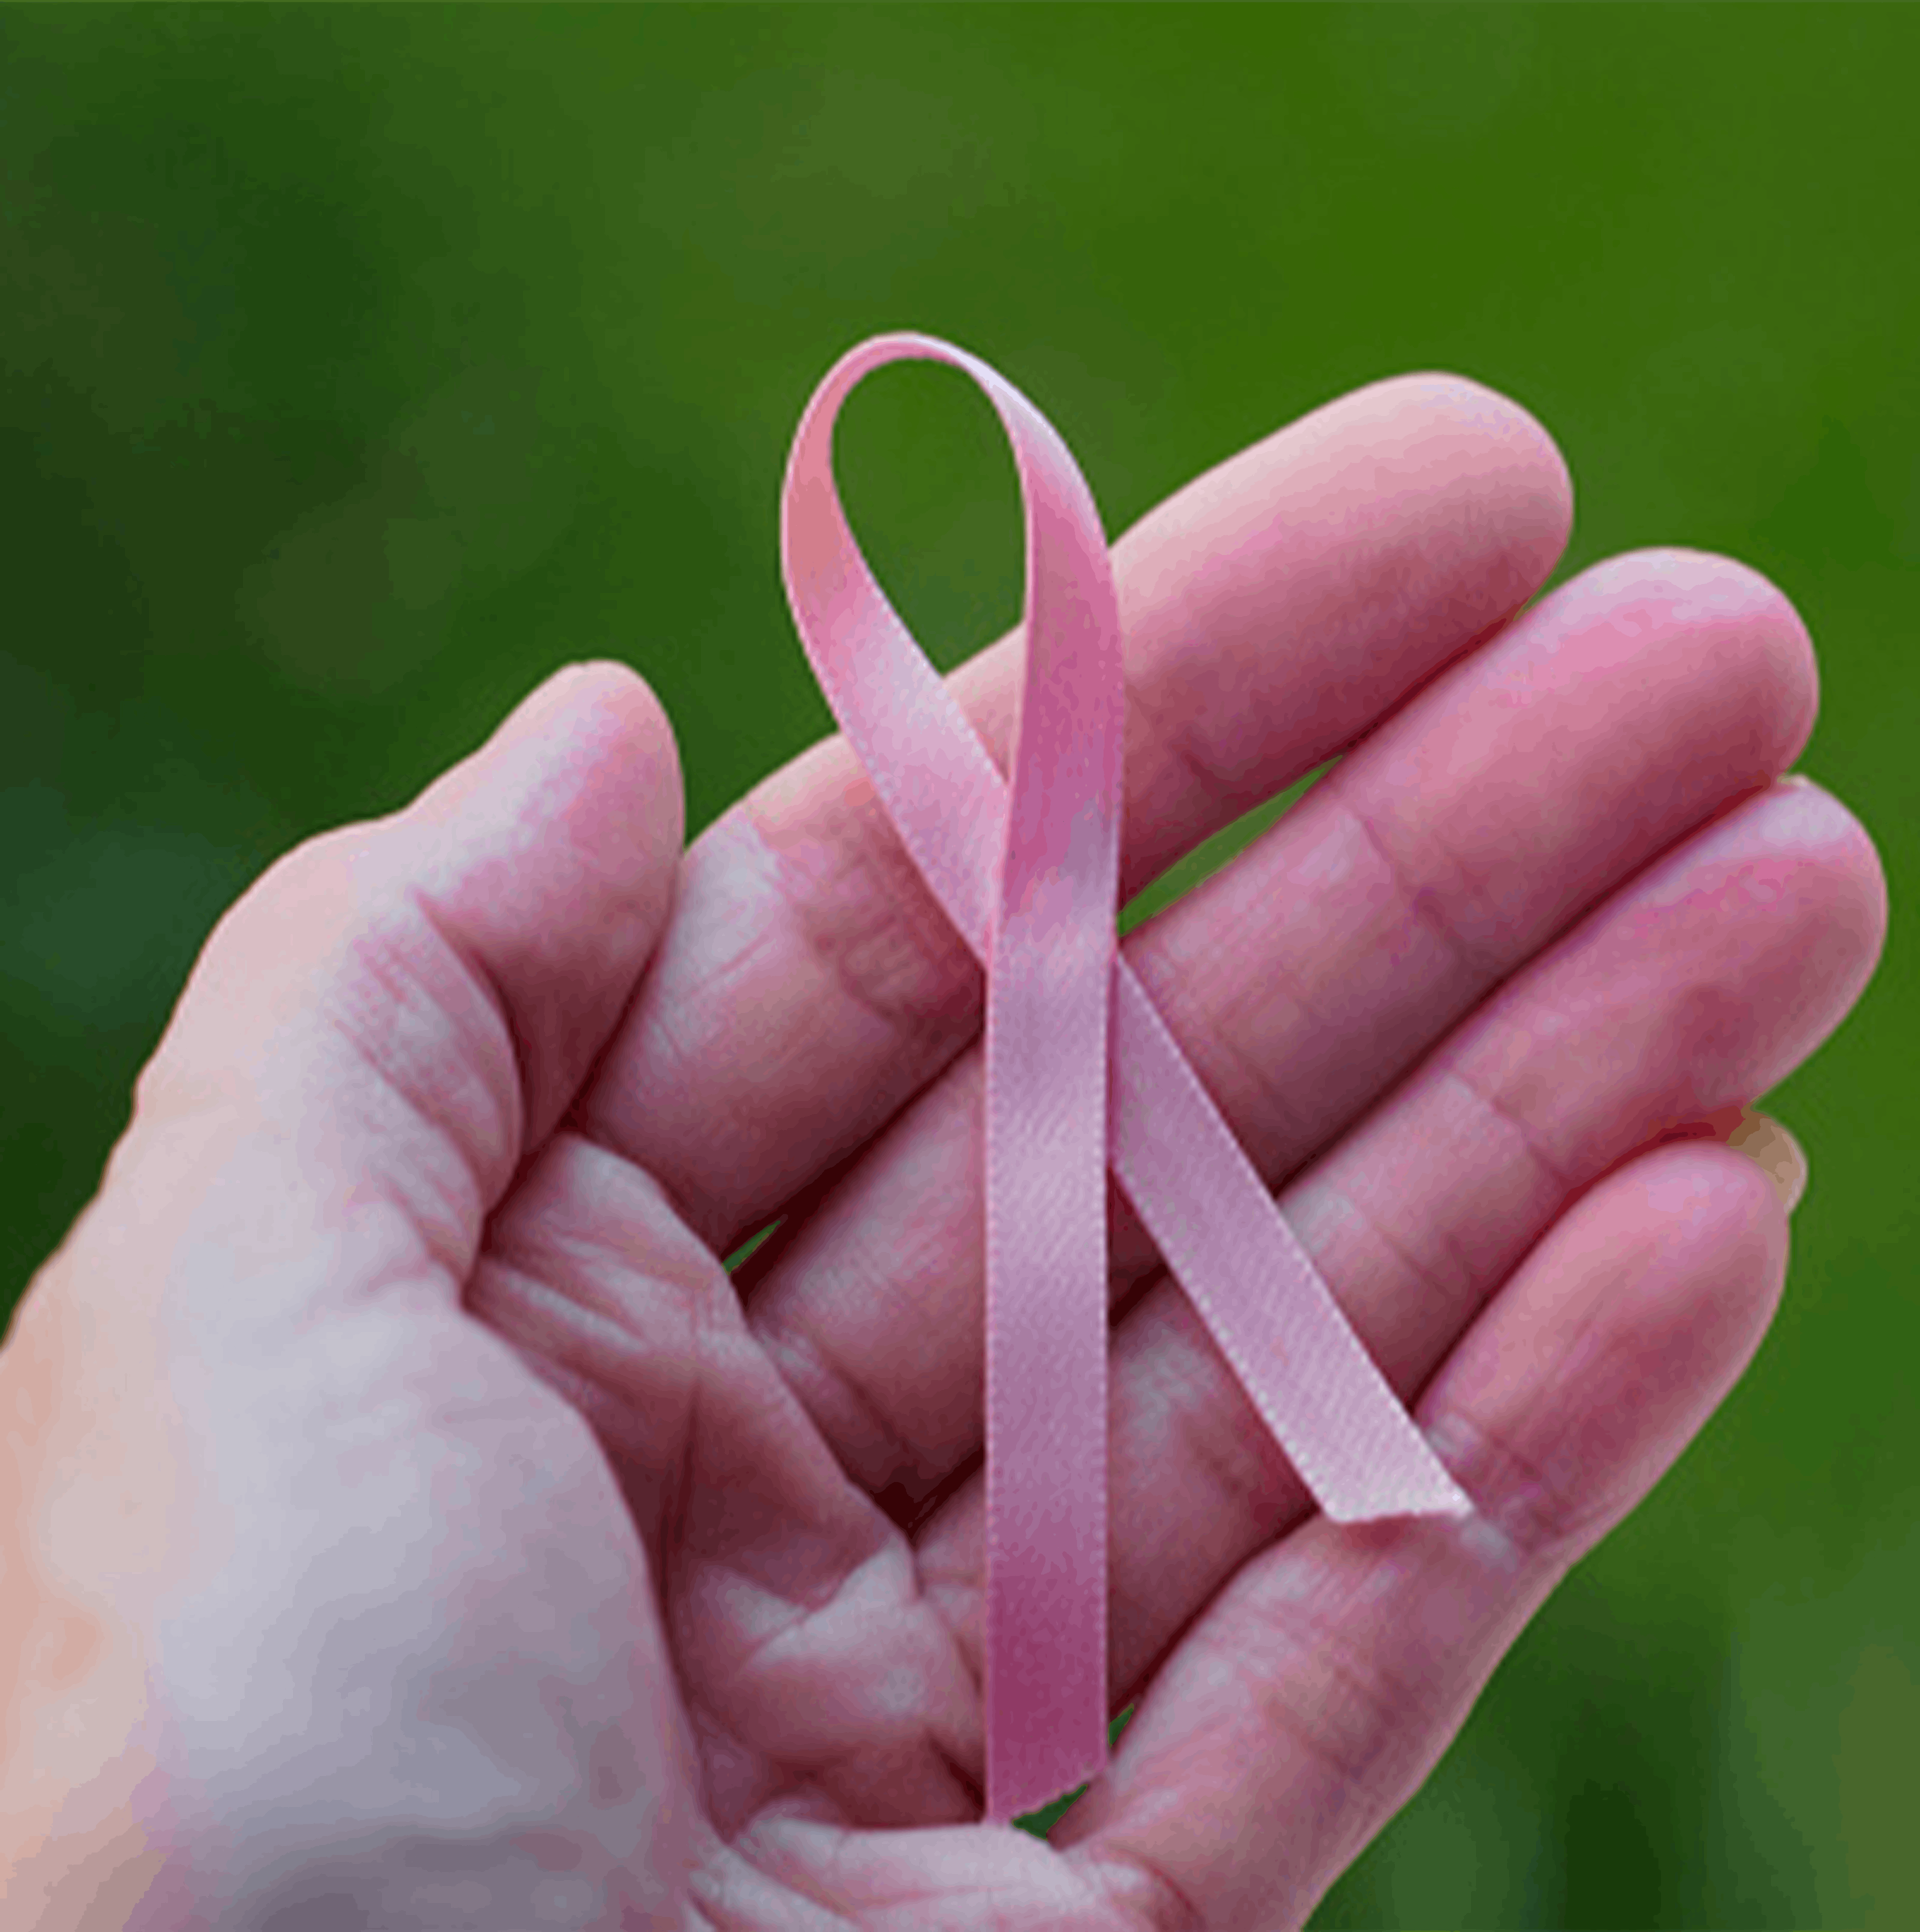 octobre rose cancer du sein